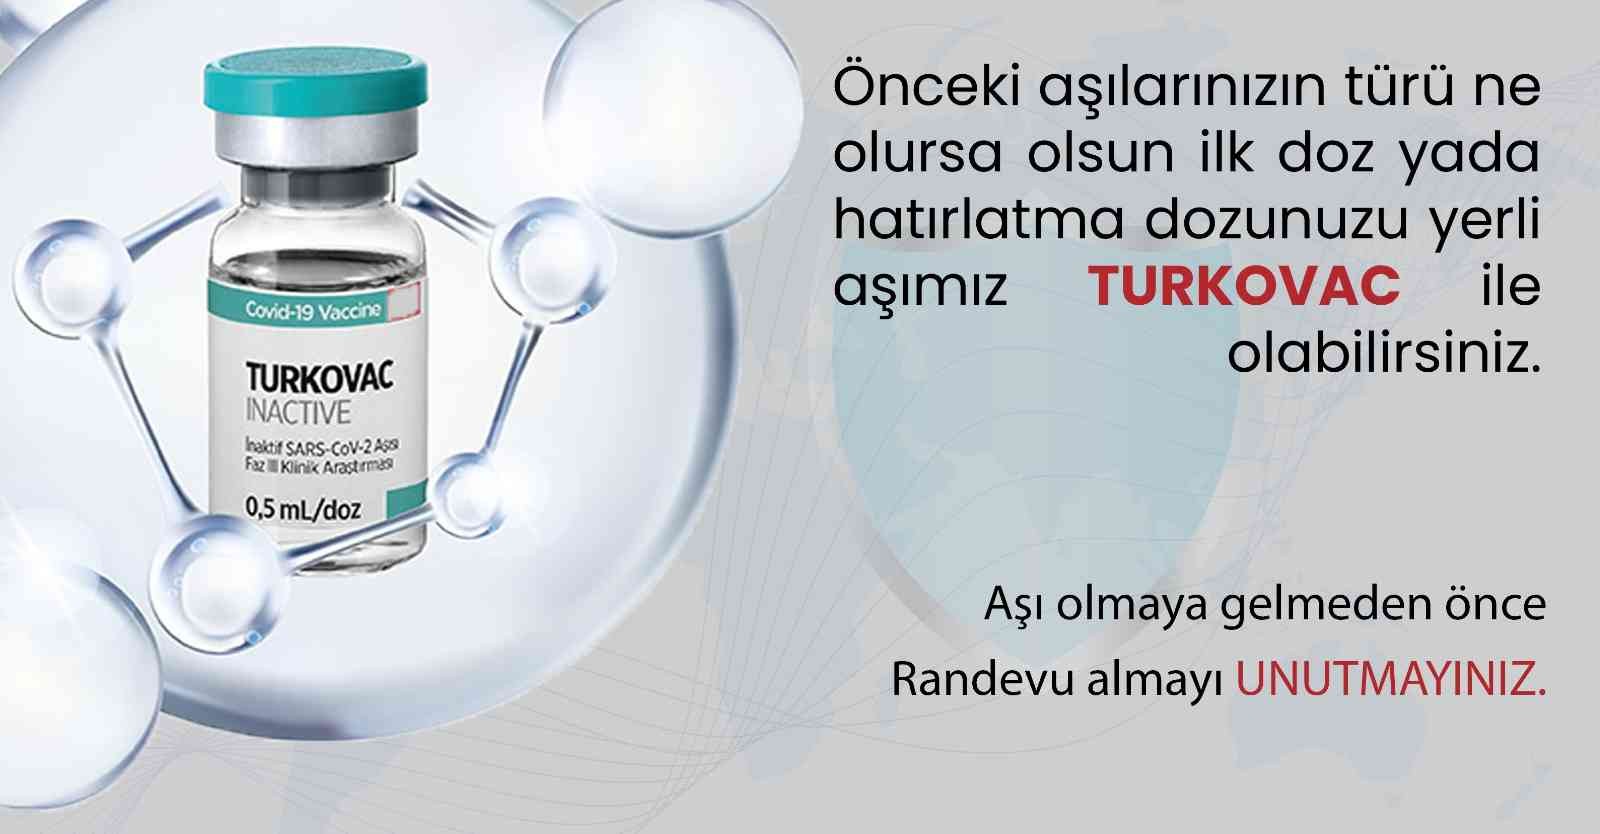 Samsun’da yerli aşı Turkovac uygulaması başlıyor #samsun